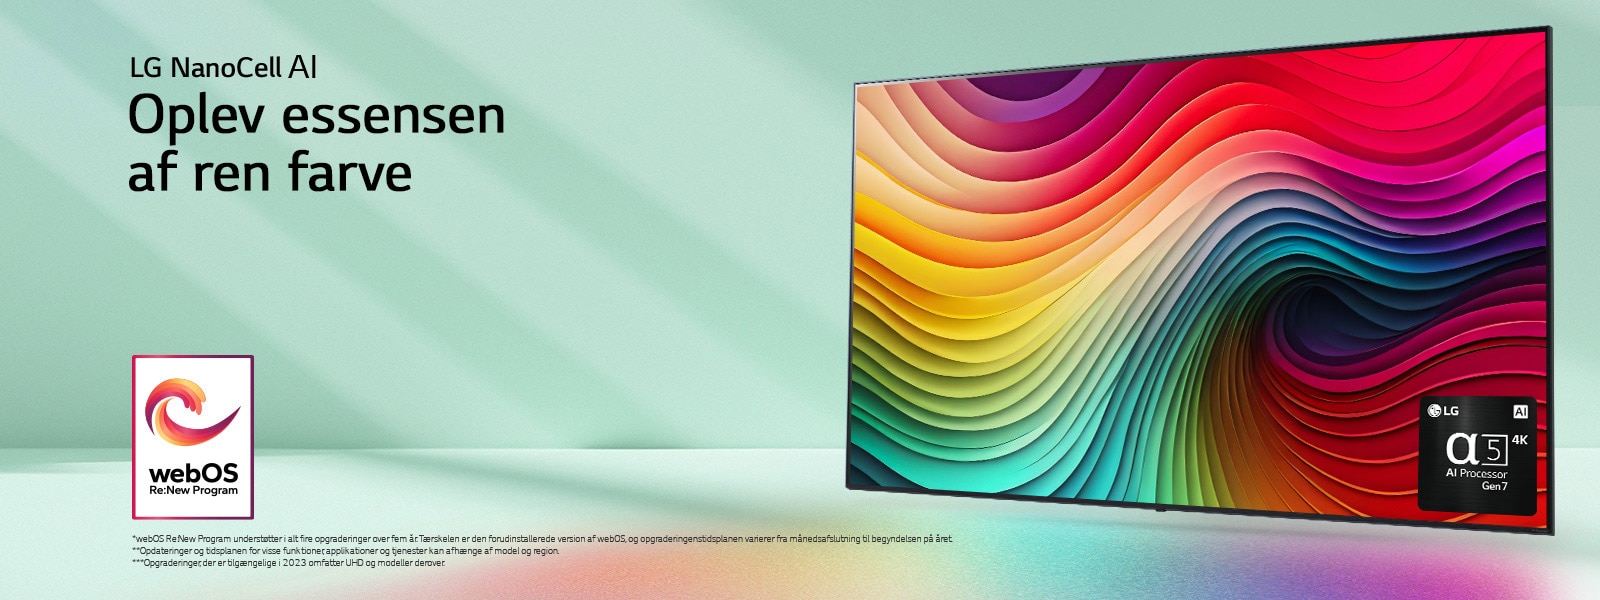 LG NanoCell TV på en mintgrøn baggrund med farvet hvirvelkunstværk og billede af alpha 5 AI Processor Gen 7 i nederste højre hjørne. Der udstråles lys, hvilket kaster farvestrålende skygger nedenunder. Logoet “webOS Re:New Program” er på billedet. En ansvarsfraskrivelse fremsætter: “webOS Re:New Program understøtter i alt fire opgraderinger over fem år. Tærskelen er den forudinstallerede version af webOS, og opgraderingenstidsplanen varierer fra månedsafslutning til begyndelse på året.” “Opdateringer og tidsplanen for visse funktioner, applikationer og tjenester kan afhænge af model og region.”  “Opgraderinger, der er tilgængelige i 2023 omfatter UHD og modeller derover.”